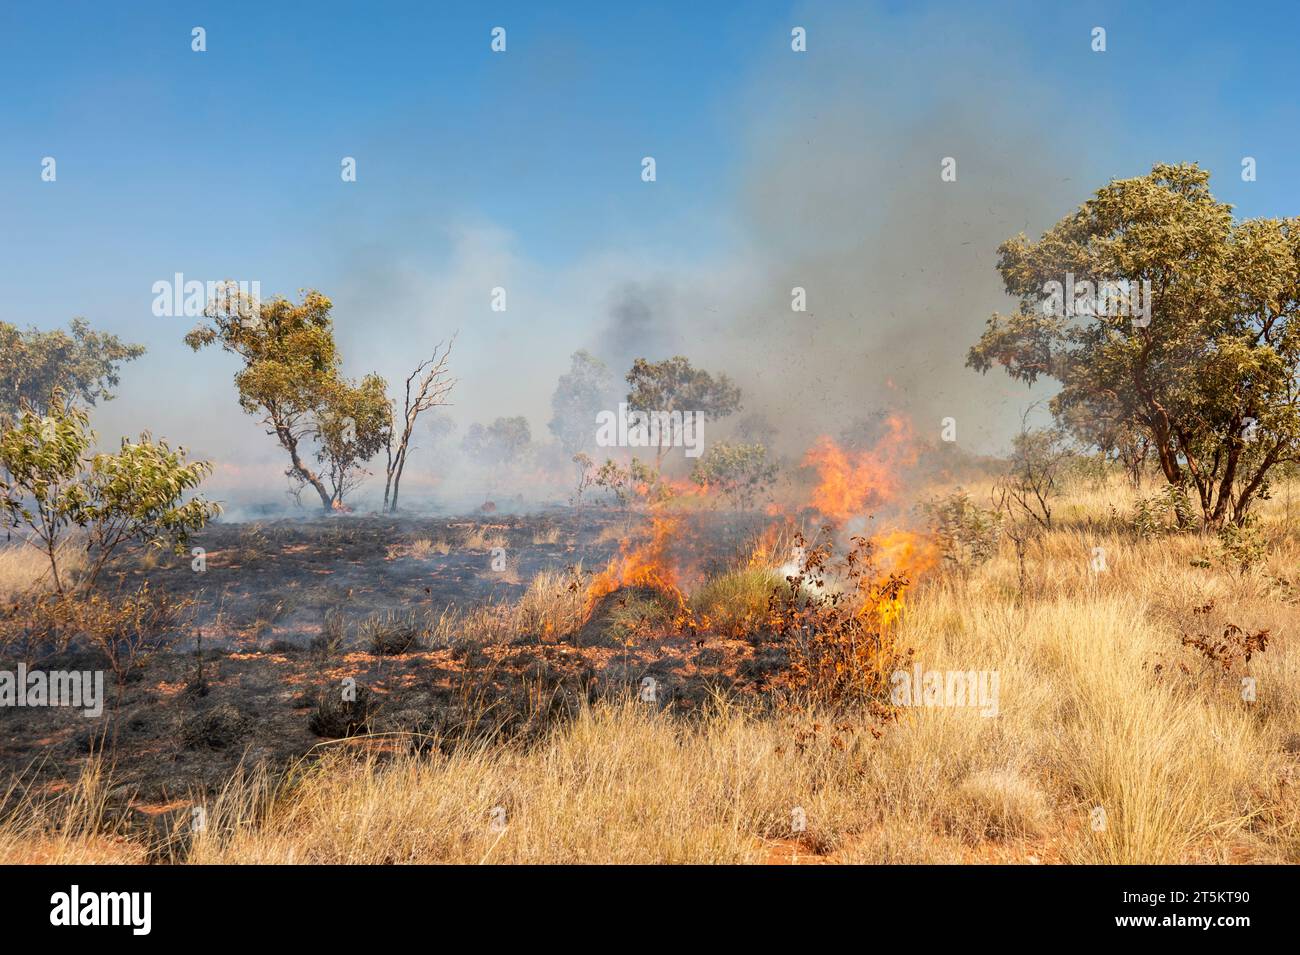 Bushfire along the Tanami Road, Kimberley Region, Western Australia, Australia Stock Photo